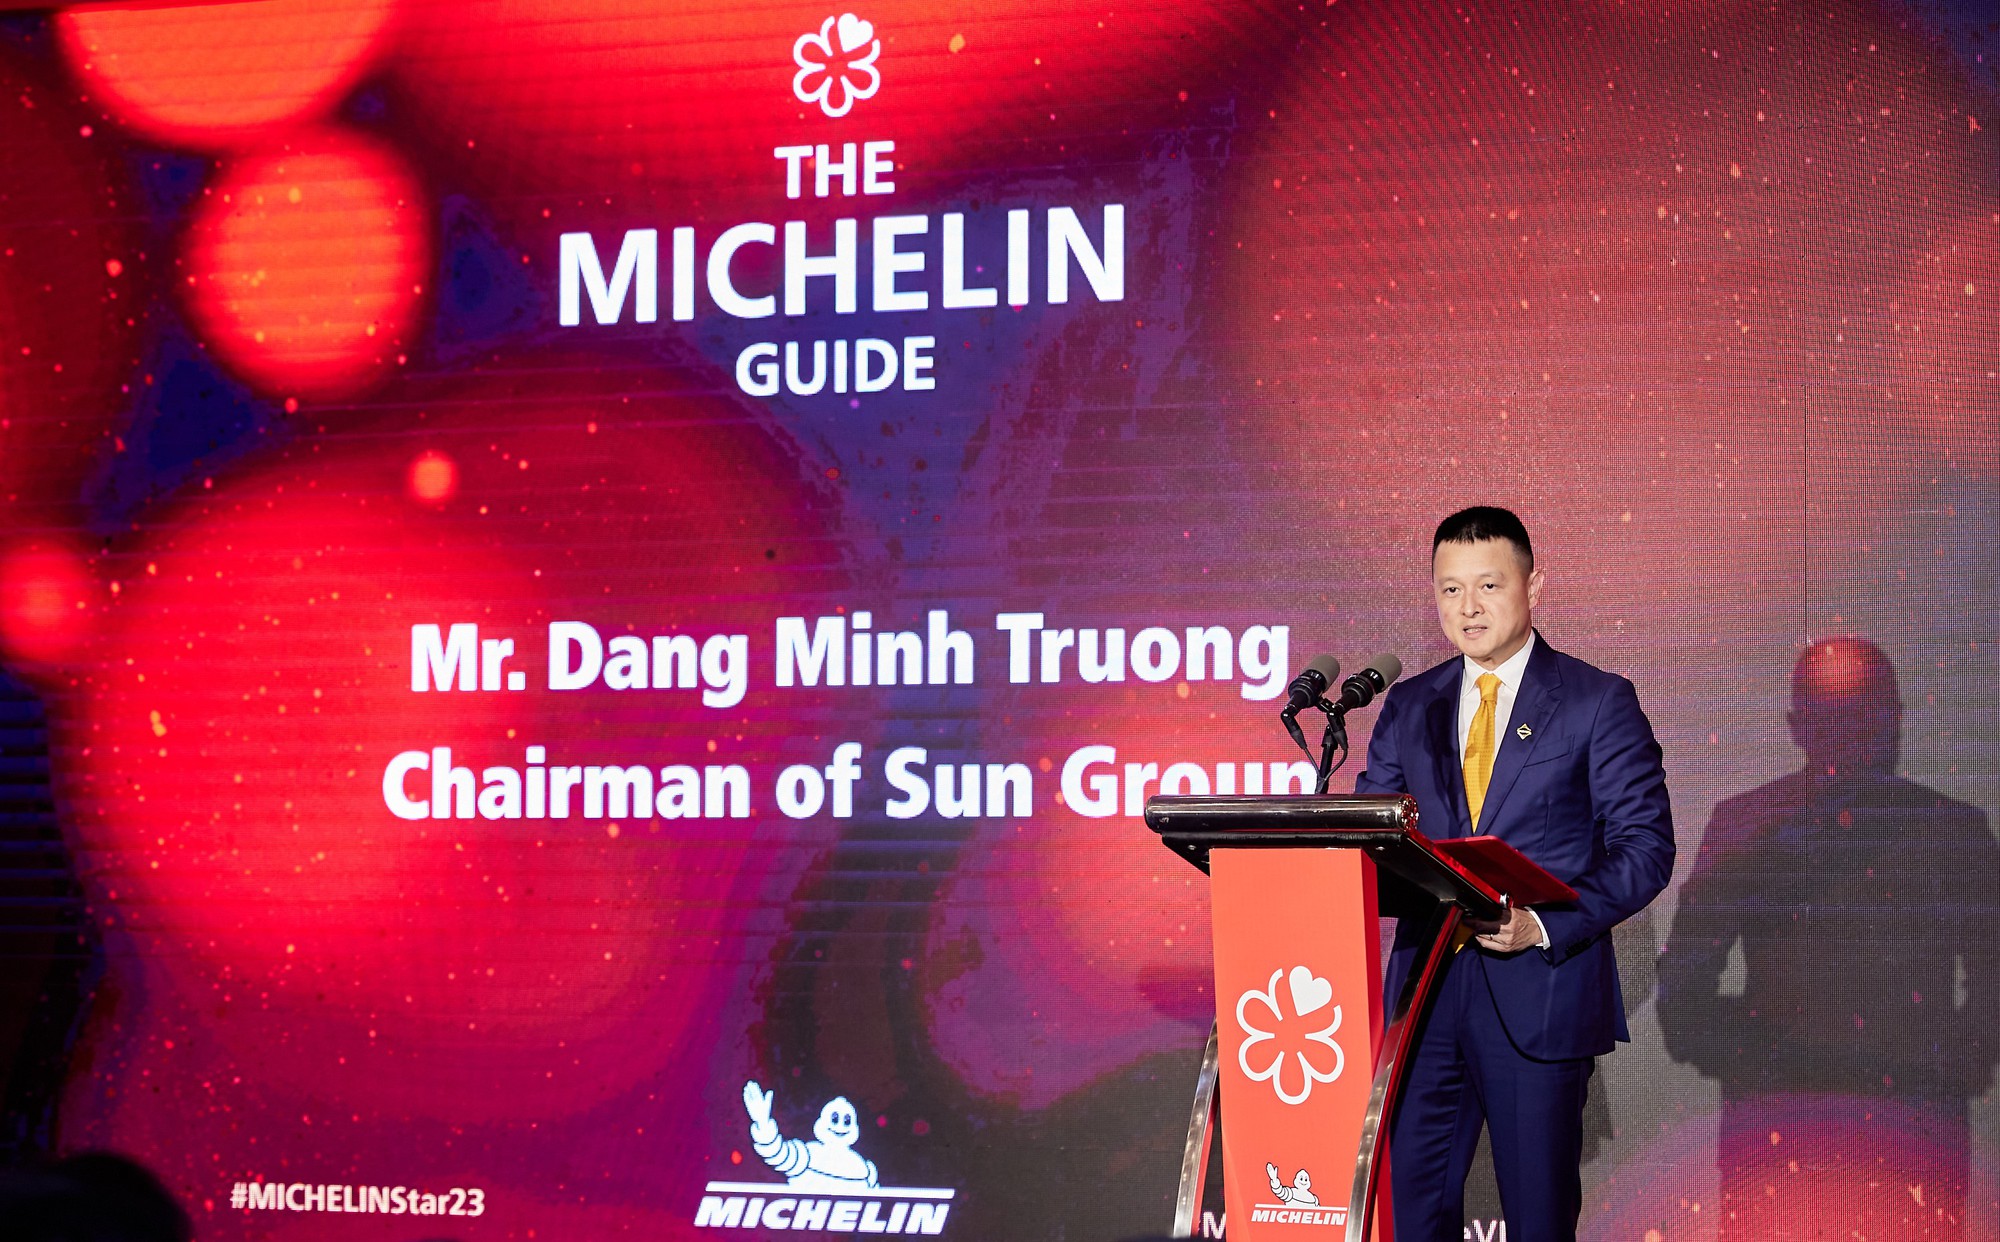 Ông Đặng Minh Trường Chủ tịch Hội đồng quản trị Tập đoàn Sun Group chia sẻ tại buổi lễ